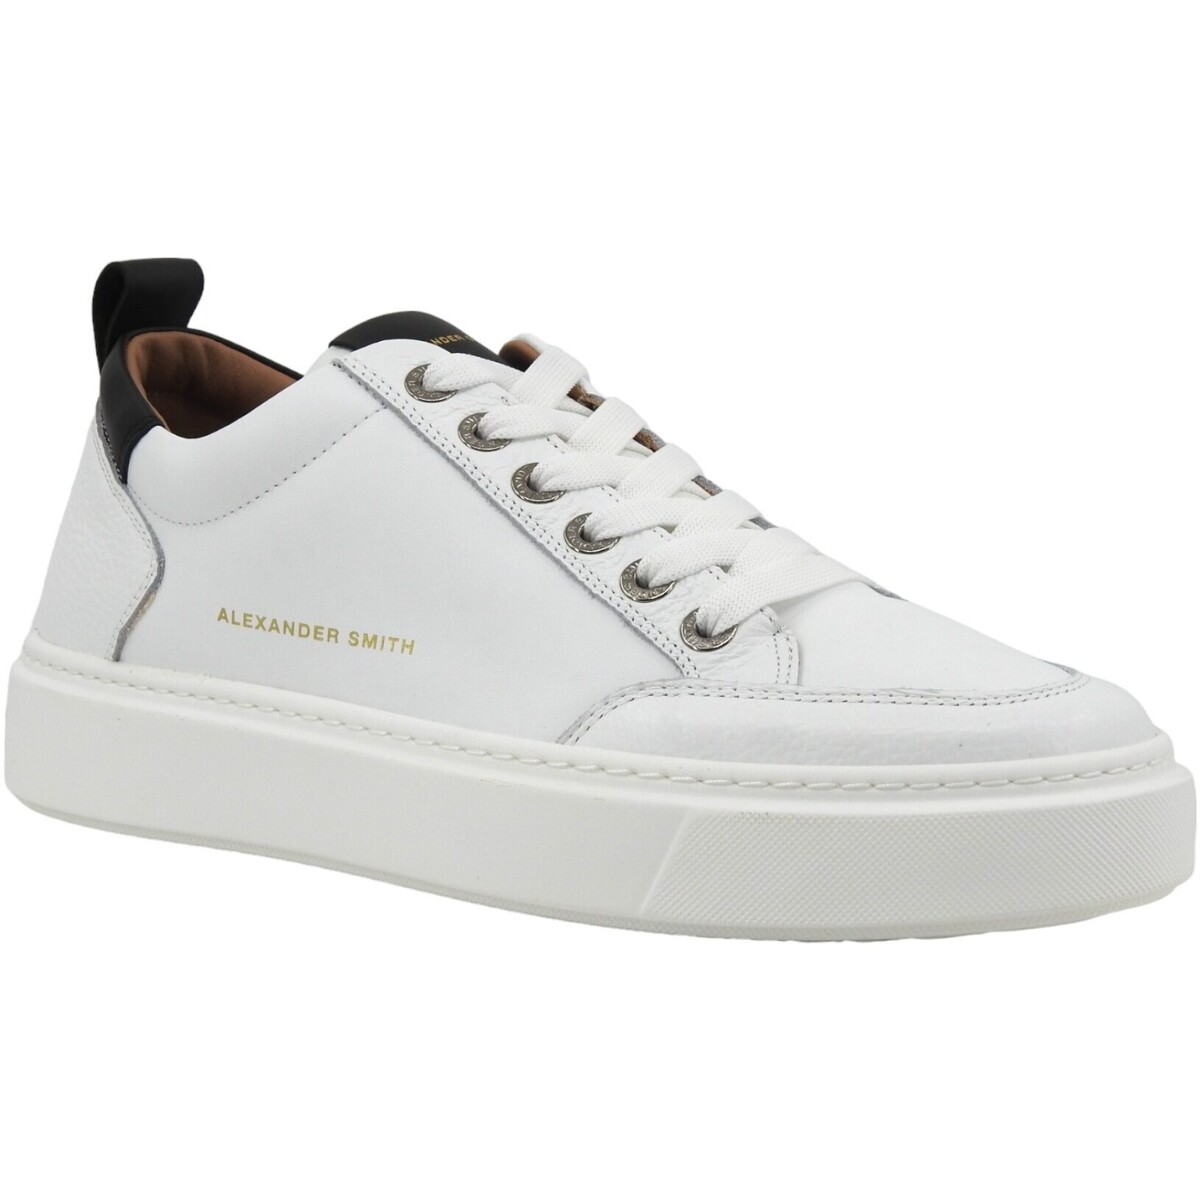 Chaussures Homme Multisport Alexander Smith Bond Sneaker Uomo White Black BDM3301 Blanc